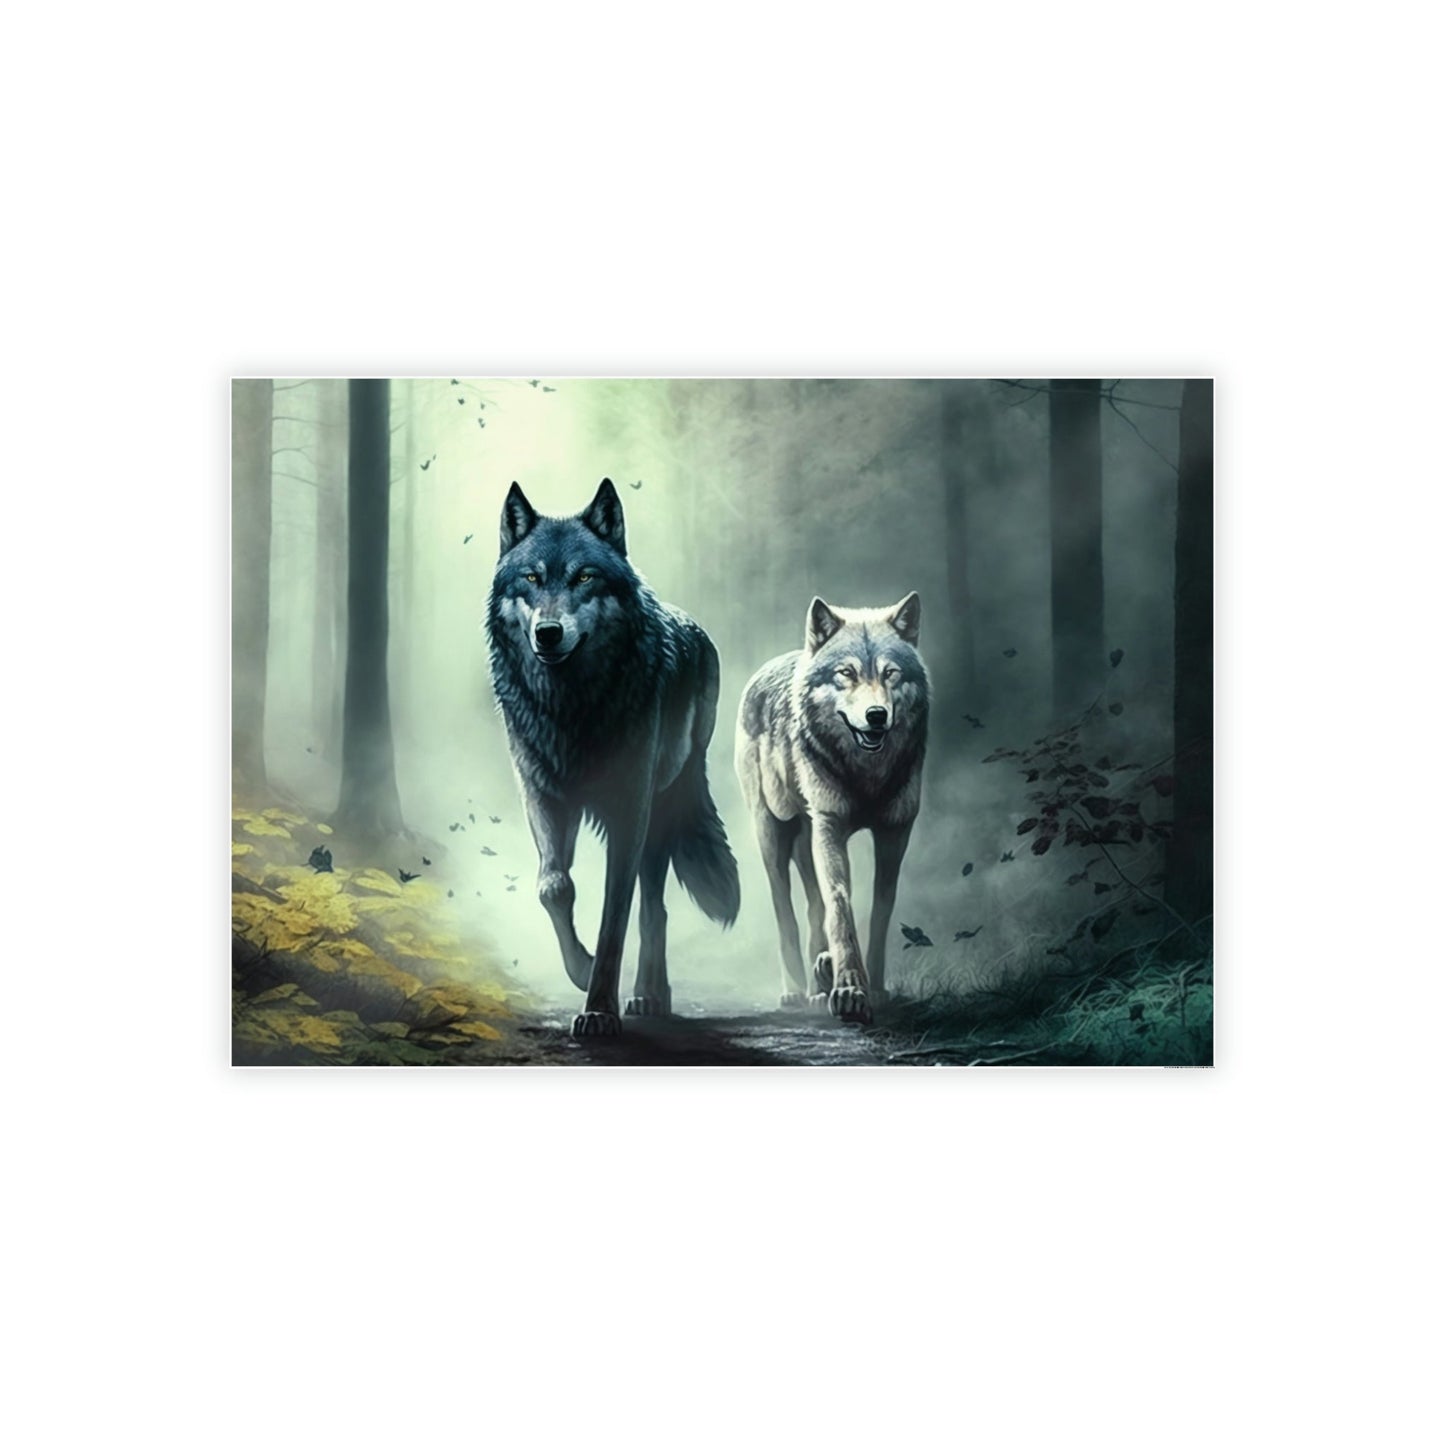 Spirit of the Wild: Fierce Wolfs in Action